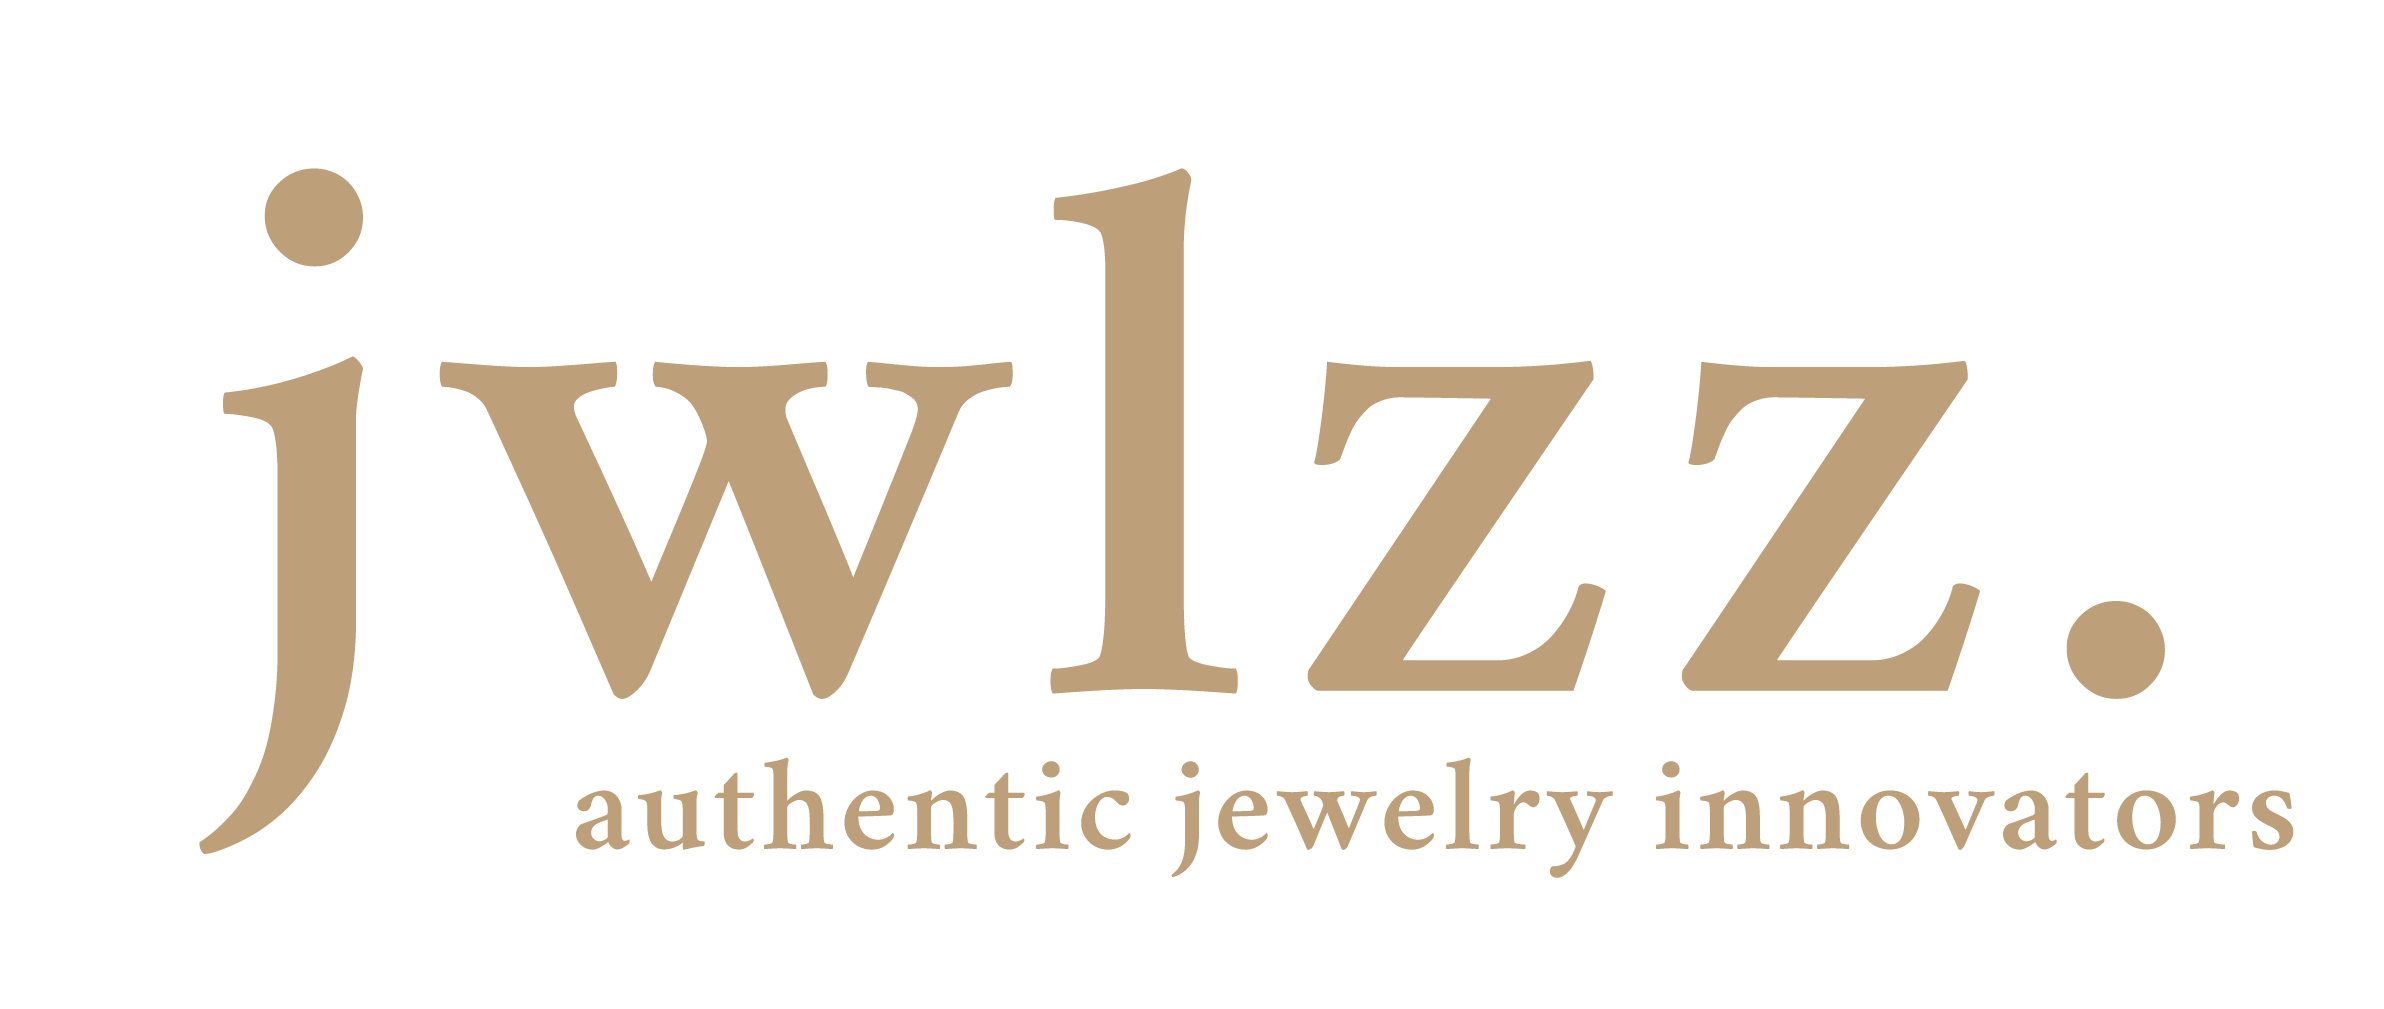 JWLZZ Logo